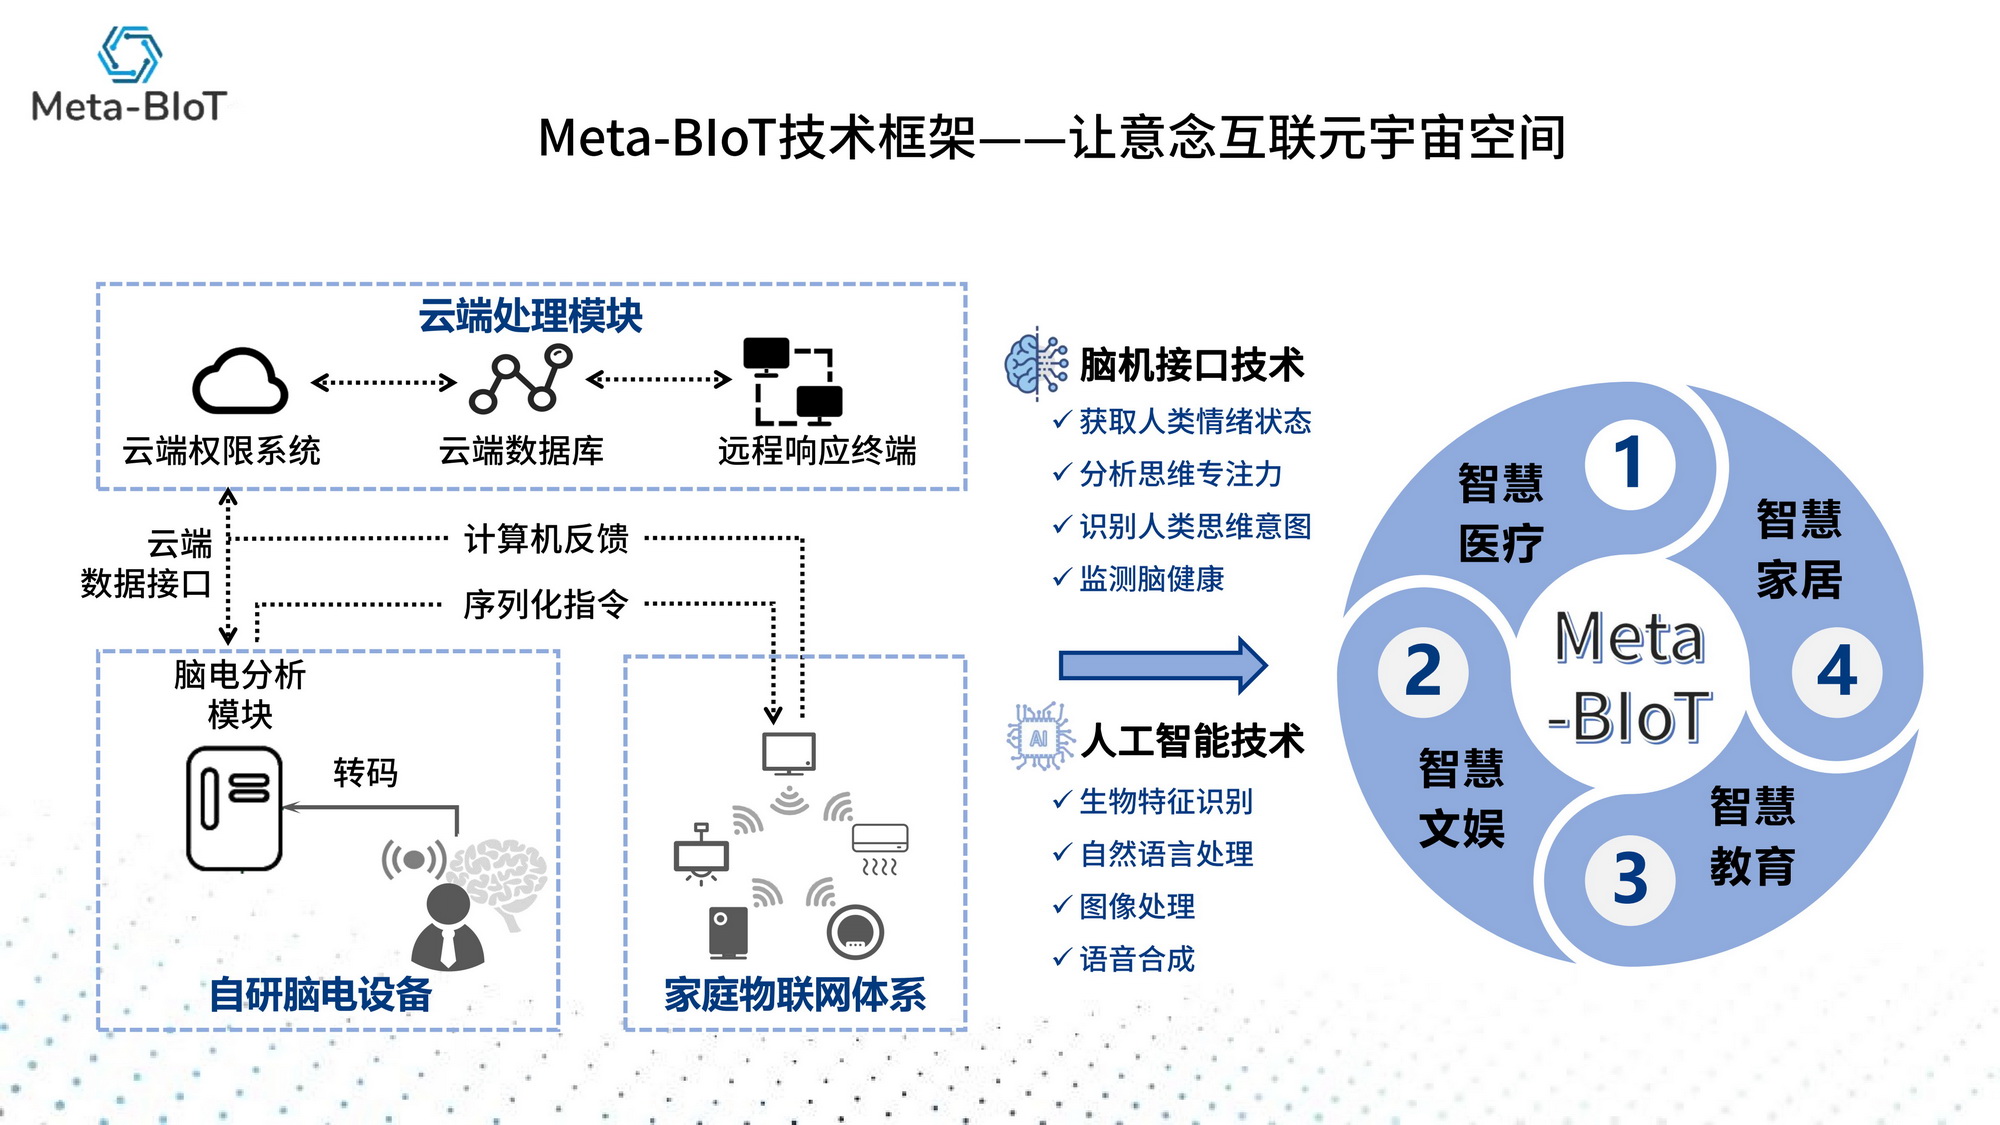 智能硬件竞赛作品——Meta-BIoT——基于AI与VR的脑机元宇宙平台